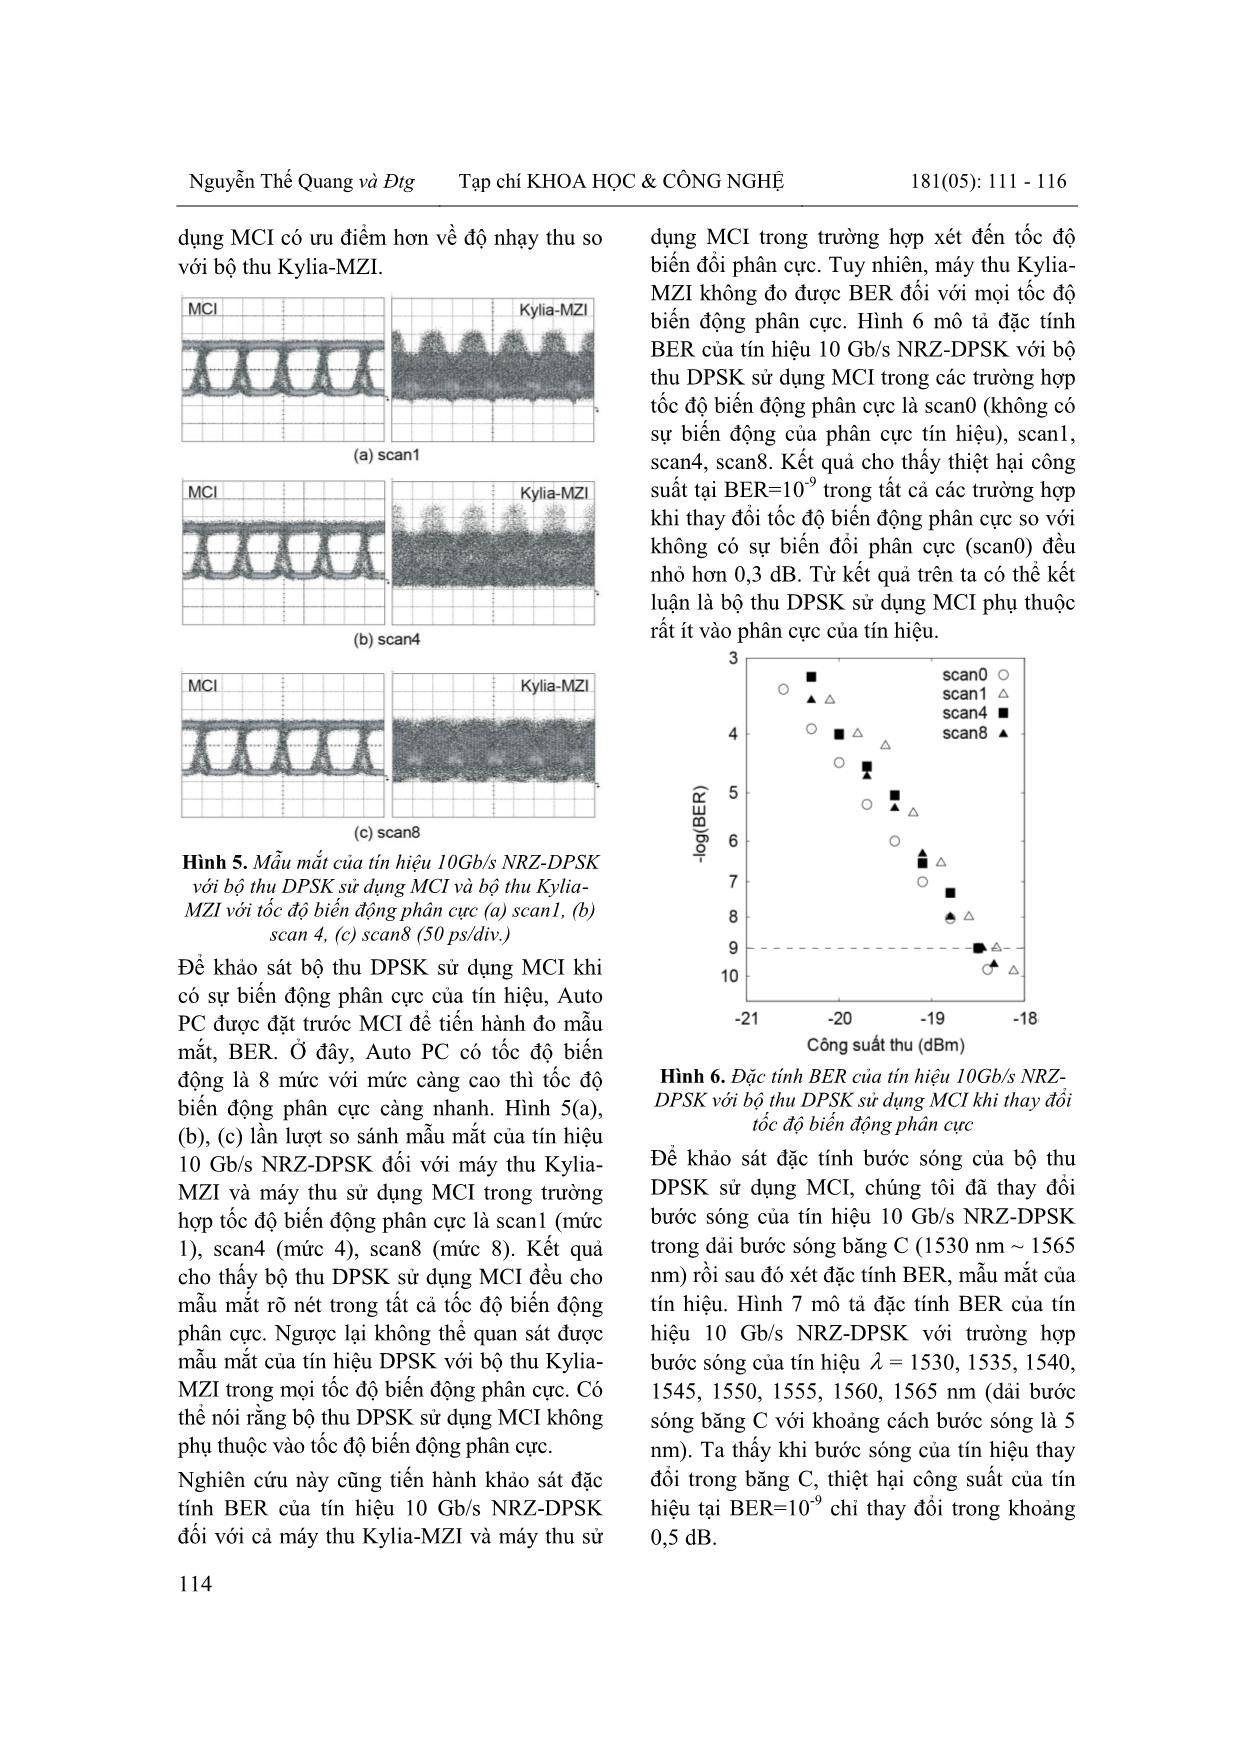 Nghiên cứu bộ thu dpsk sử dụng giao thoa kế Michelson với Faraday quay gương trang 4